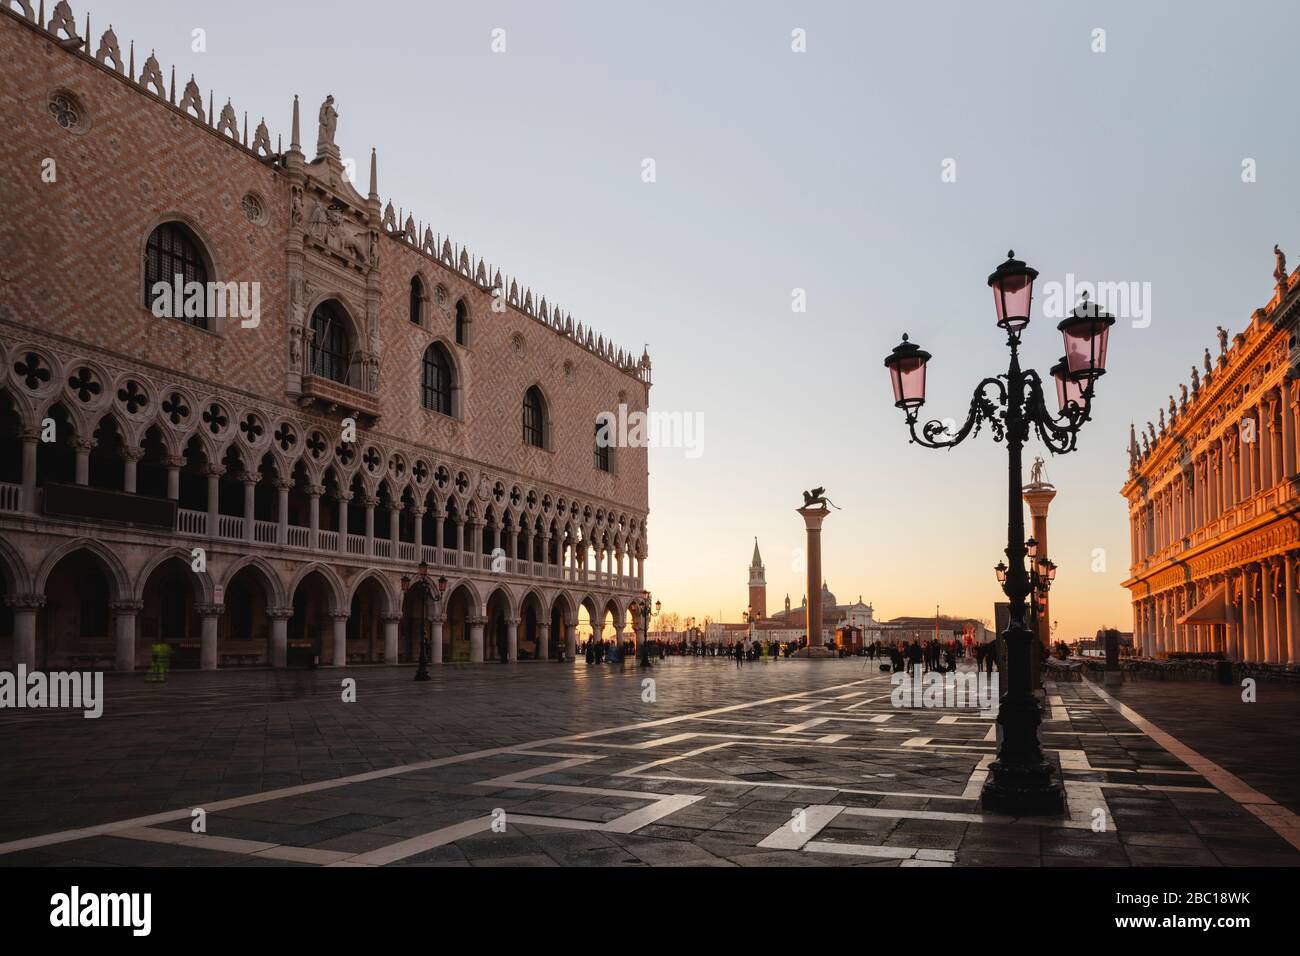 Italia, Venecia, Piazza San Marco y el Palacio de los Doges al amanecer Foto de stock